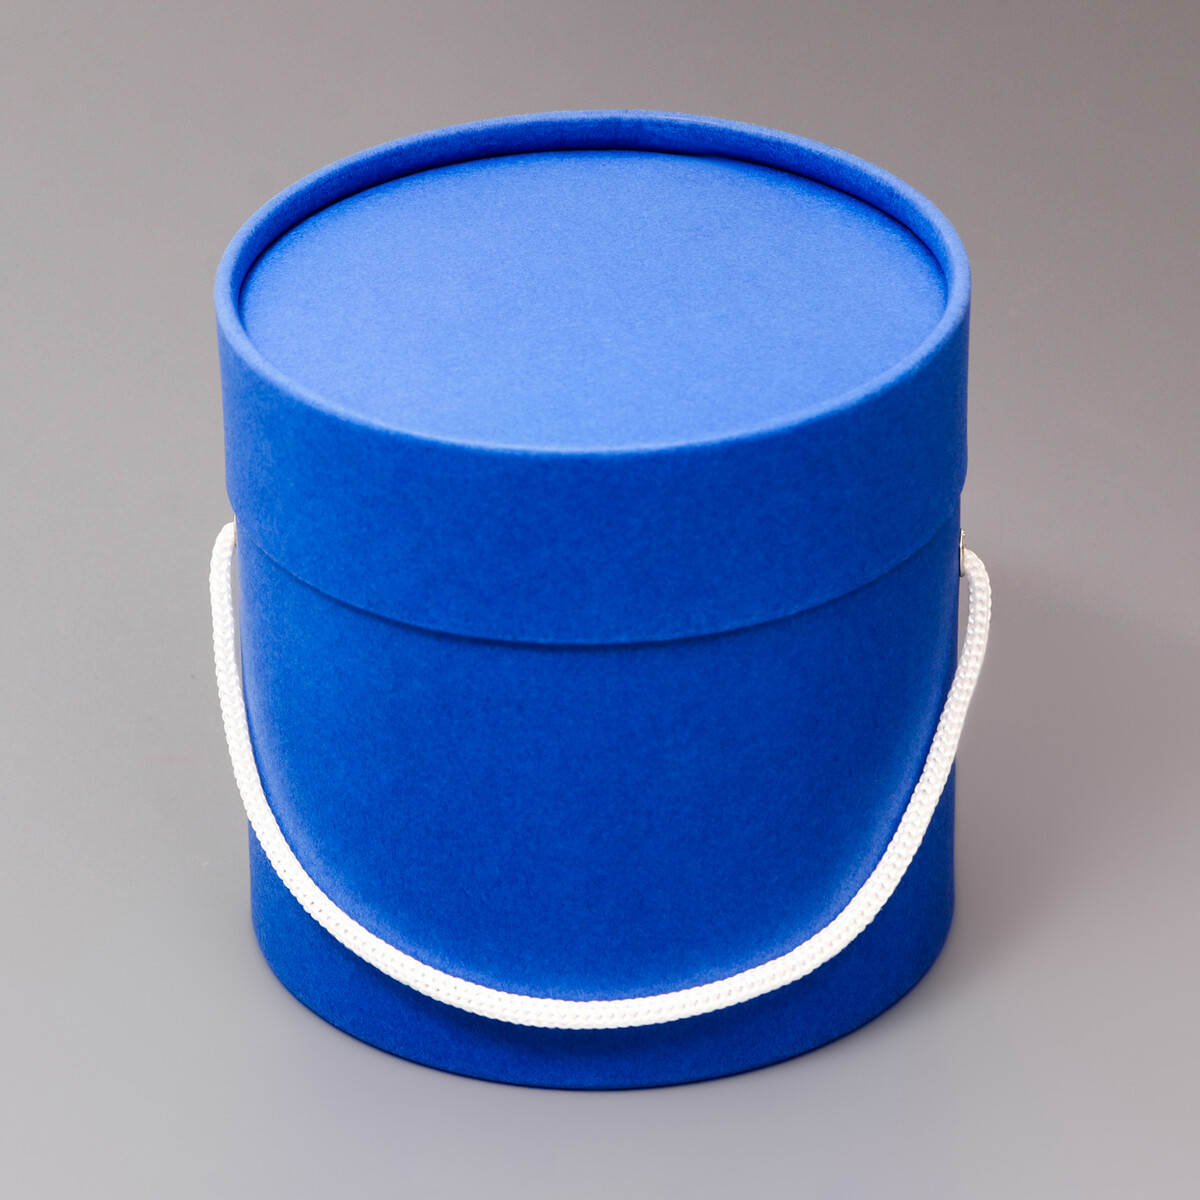 Подарочная коробка, круглая, синяя,с шнурком, 12 х 12 см кубики методики зайцева собранные синяя коробка картон